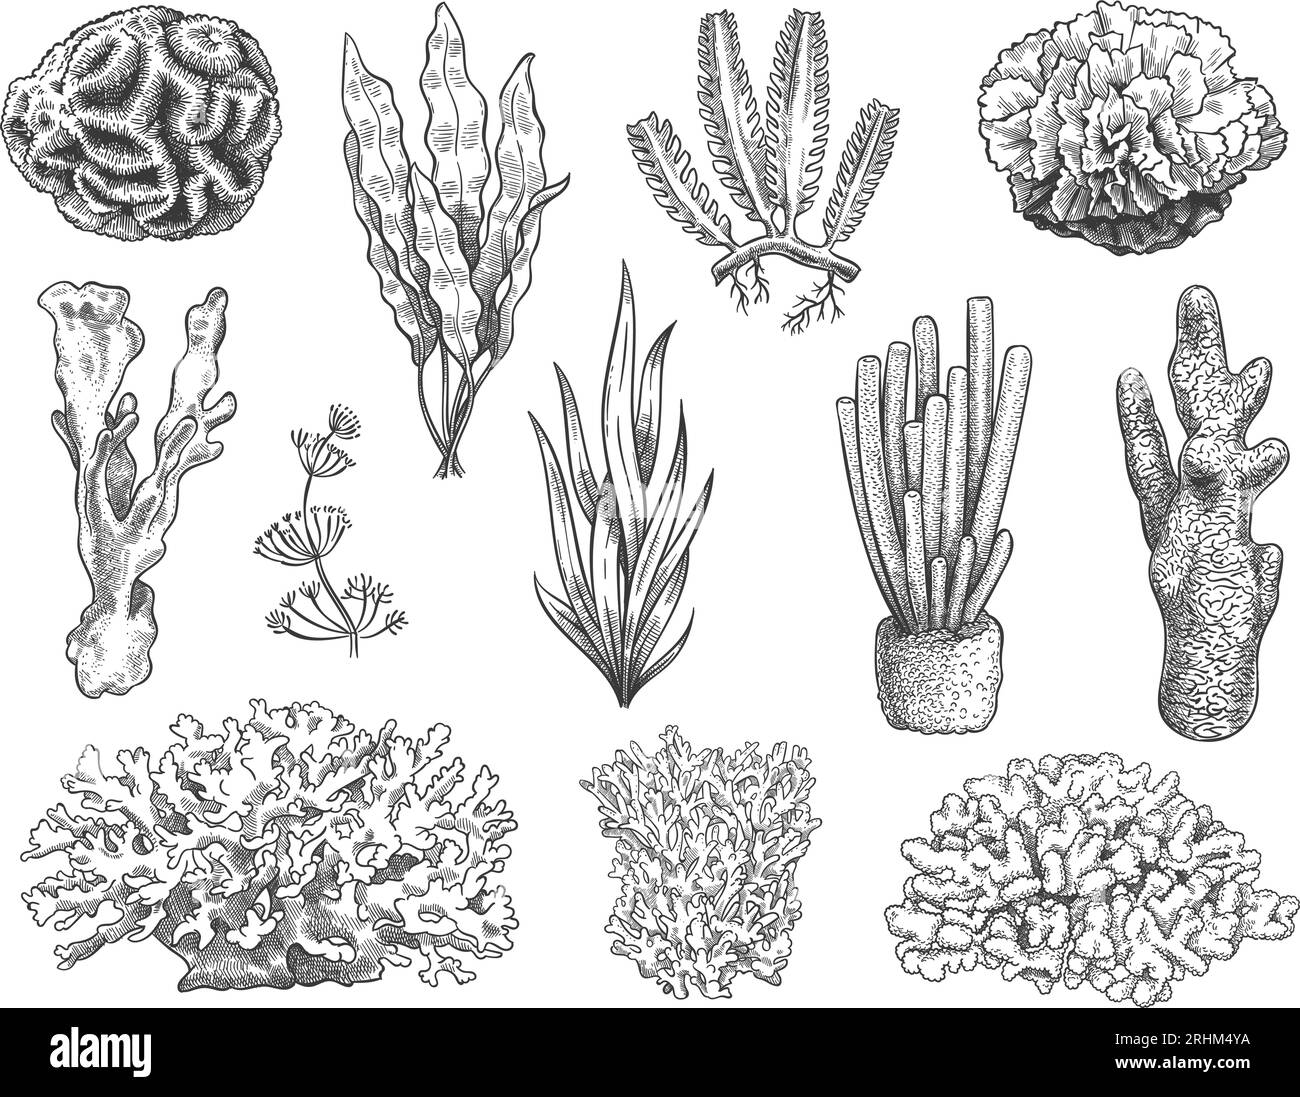 marine ocean plants drawing